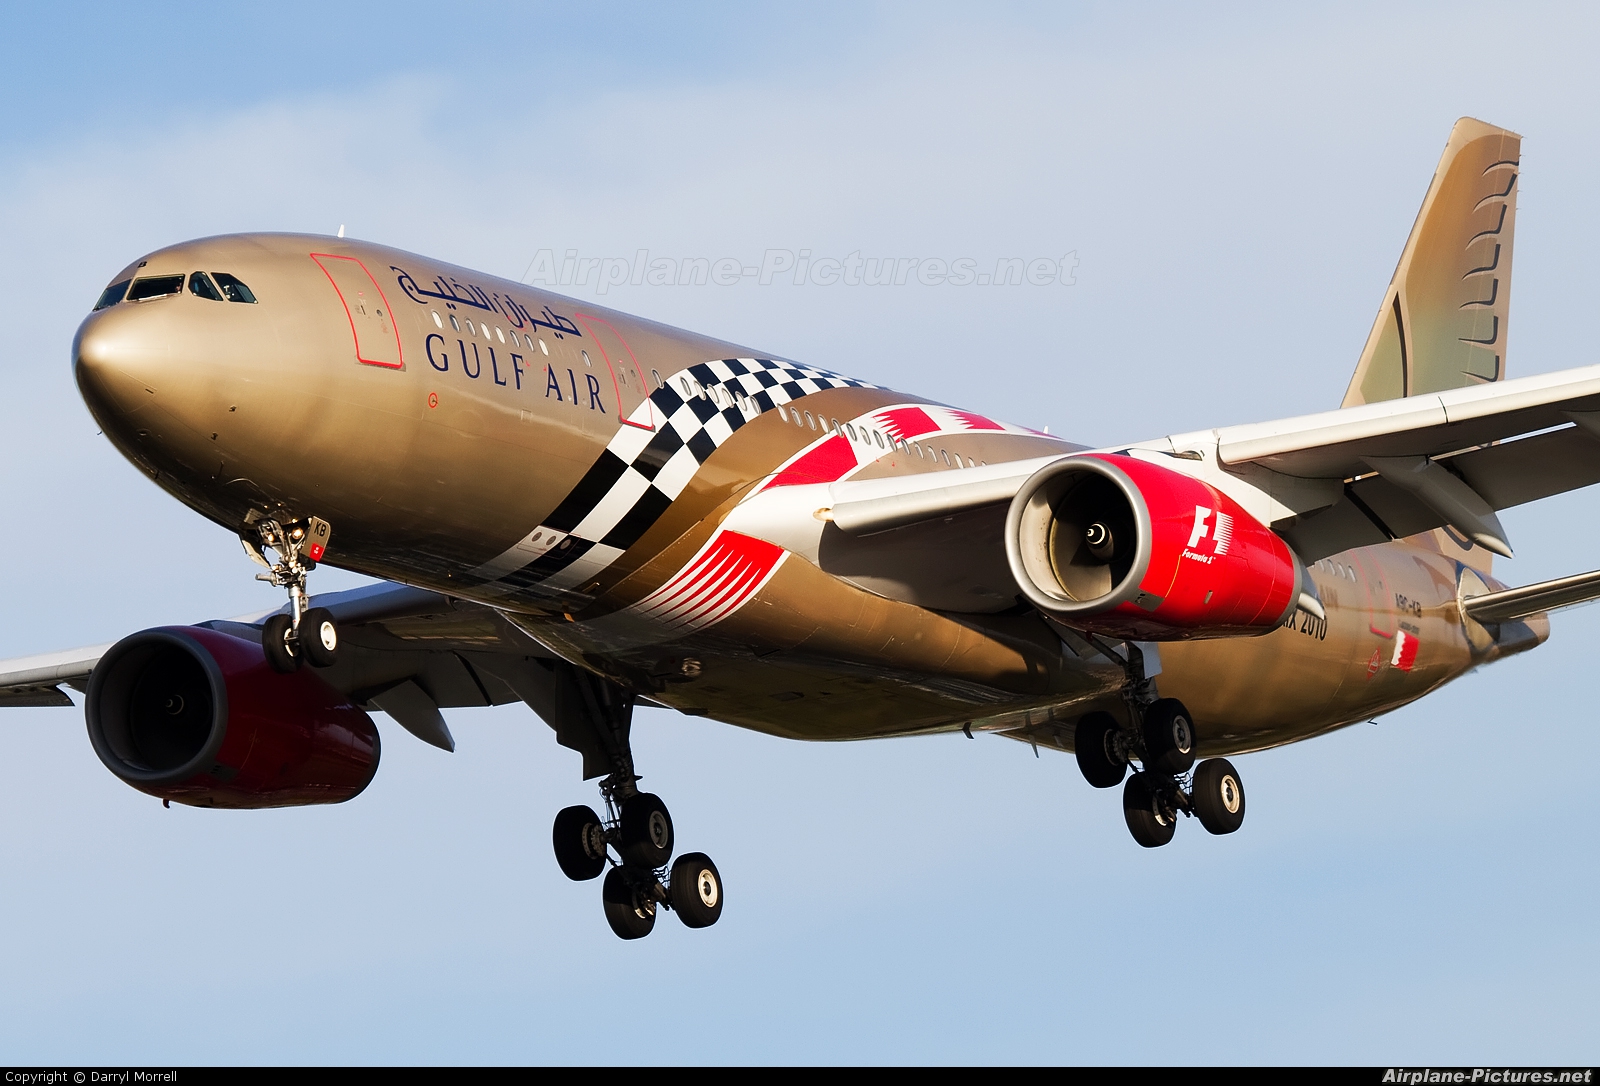 Gulf Air A9C-KB aircraft at London - Heathrow